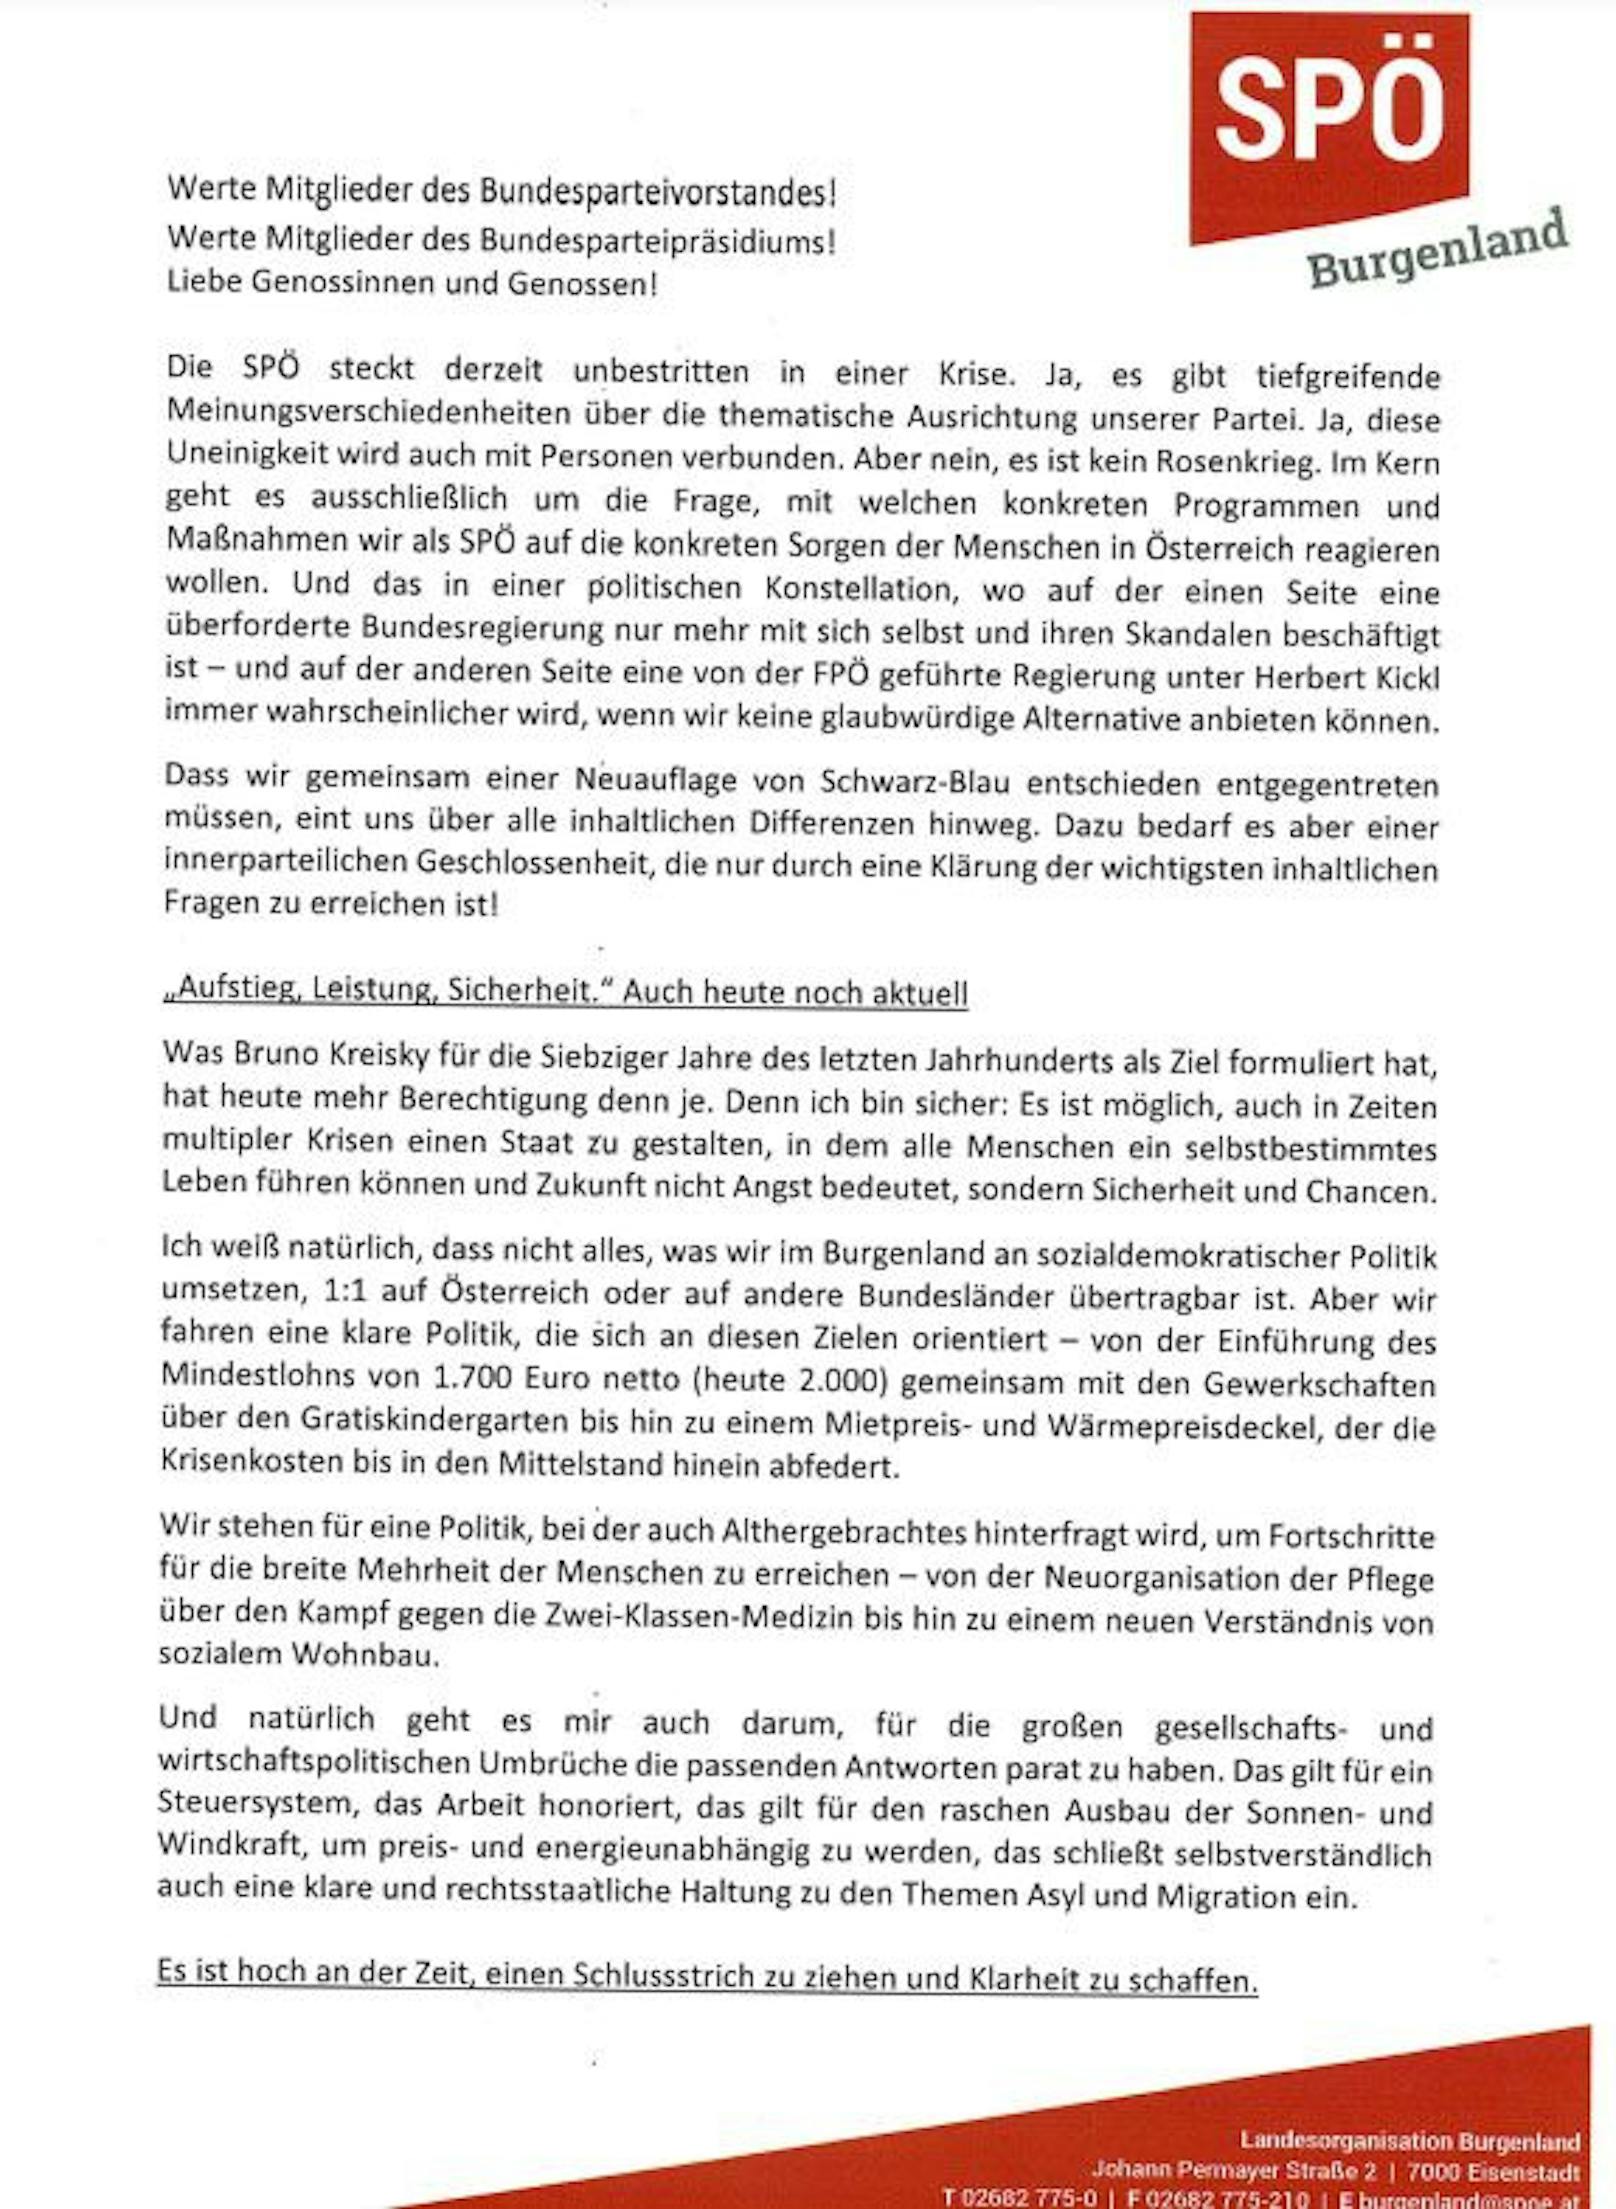 <a data-li-document-ref="100259949" href="https://www.heute.at/s/spoe-knalleffekt-doskozil-tritt-gegen-rendi-wagner-an-100259949">Hans Peter Doskozil</a> (52) tritt gegen Pamela Rendi-Wagner an und will Vorsitzender der SPÖ werden. In einem Brief begründet er seine Entscheidung. <em>"Heute"</em> liegt das Schreiben vor.